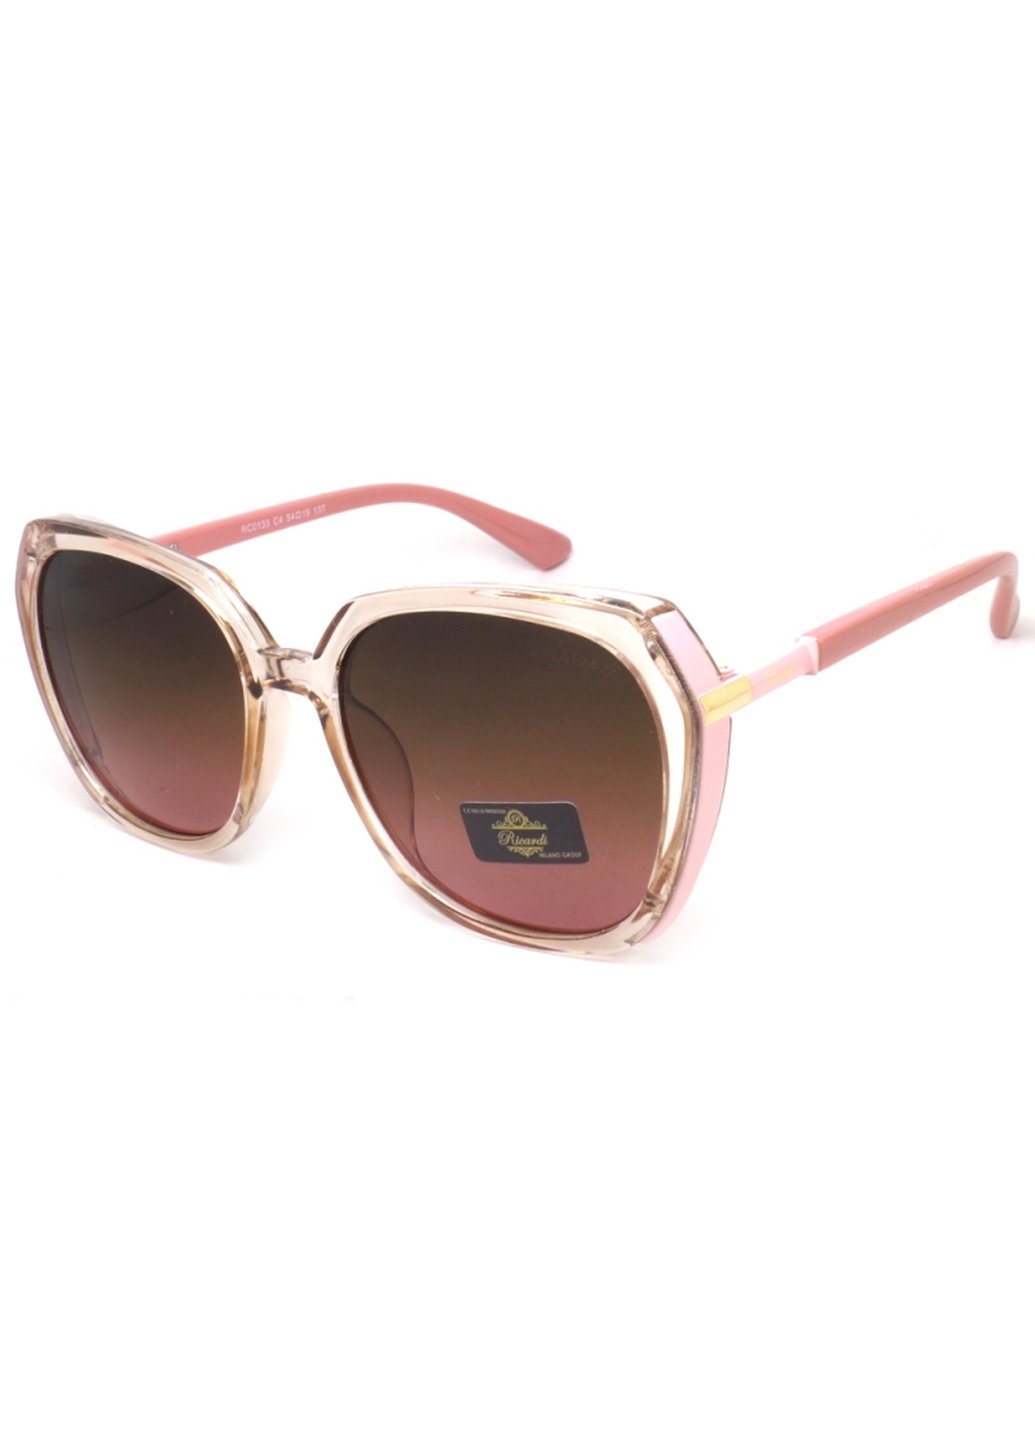 Купить Женские солнцезащитные очки Ricardi RC0133 110019 - Коричневый в интернет-магазине